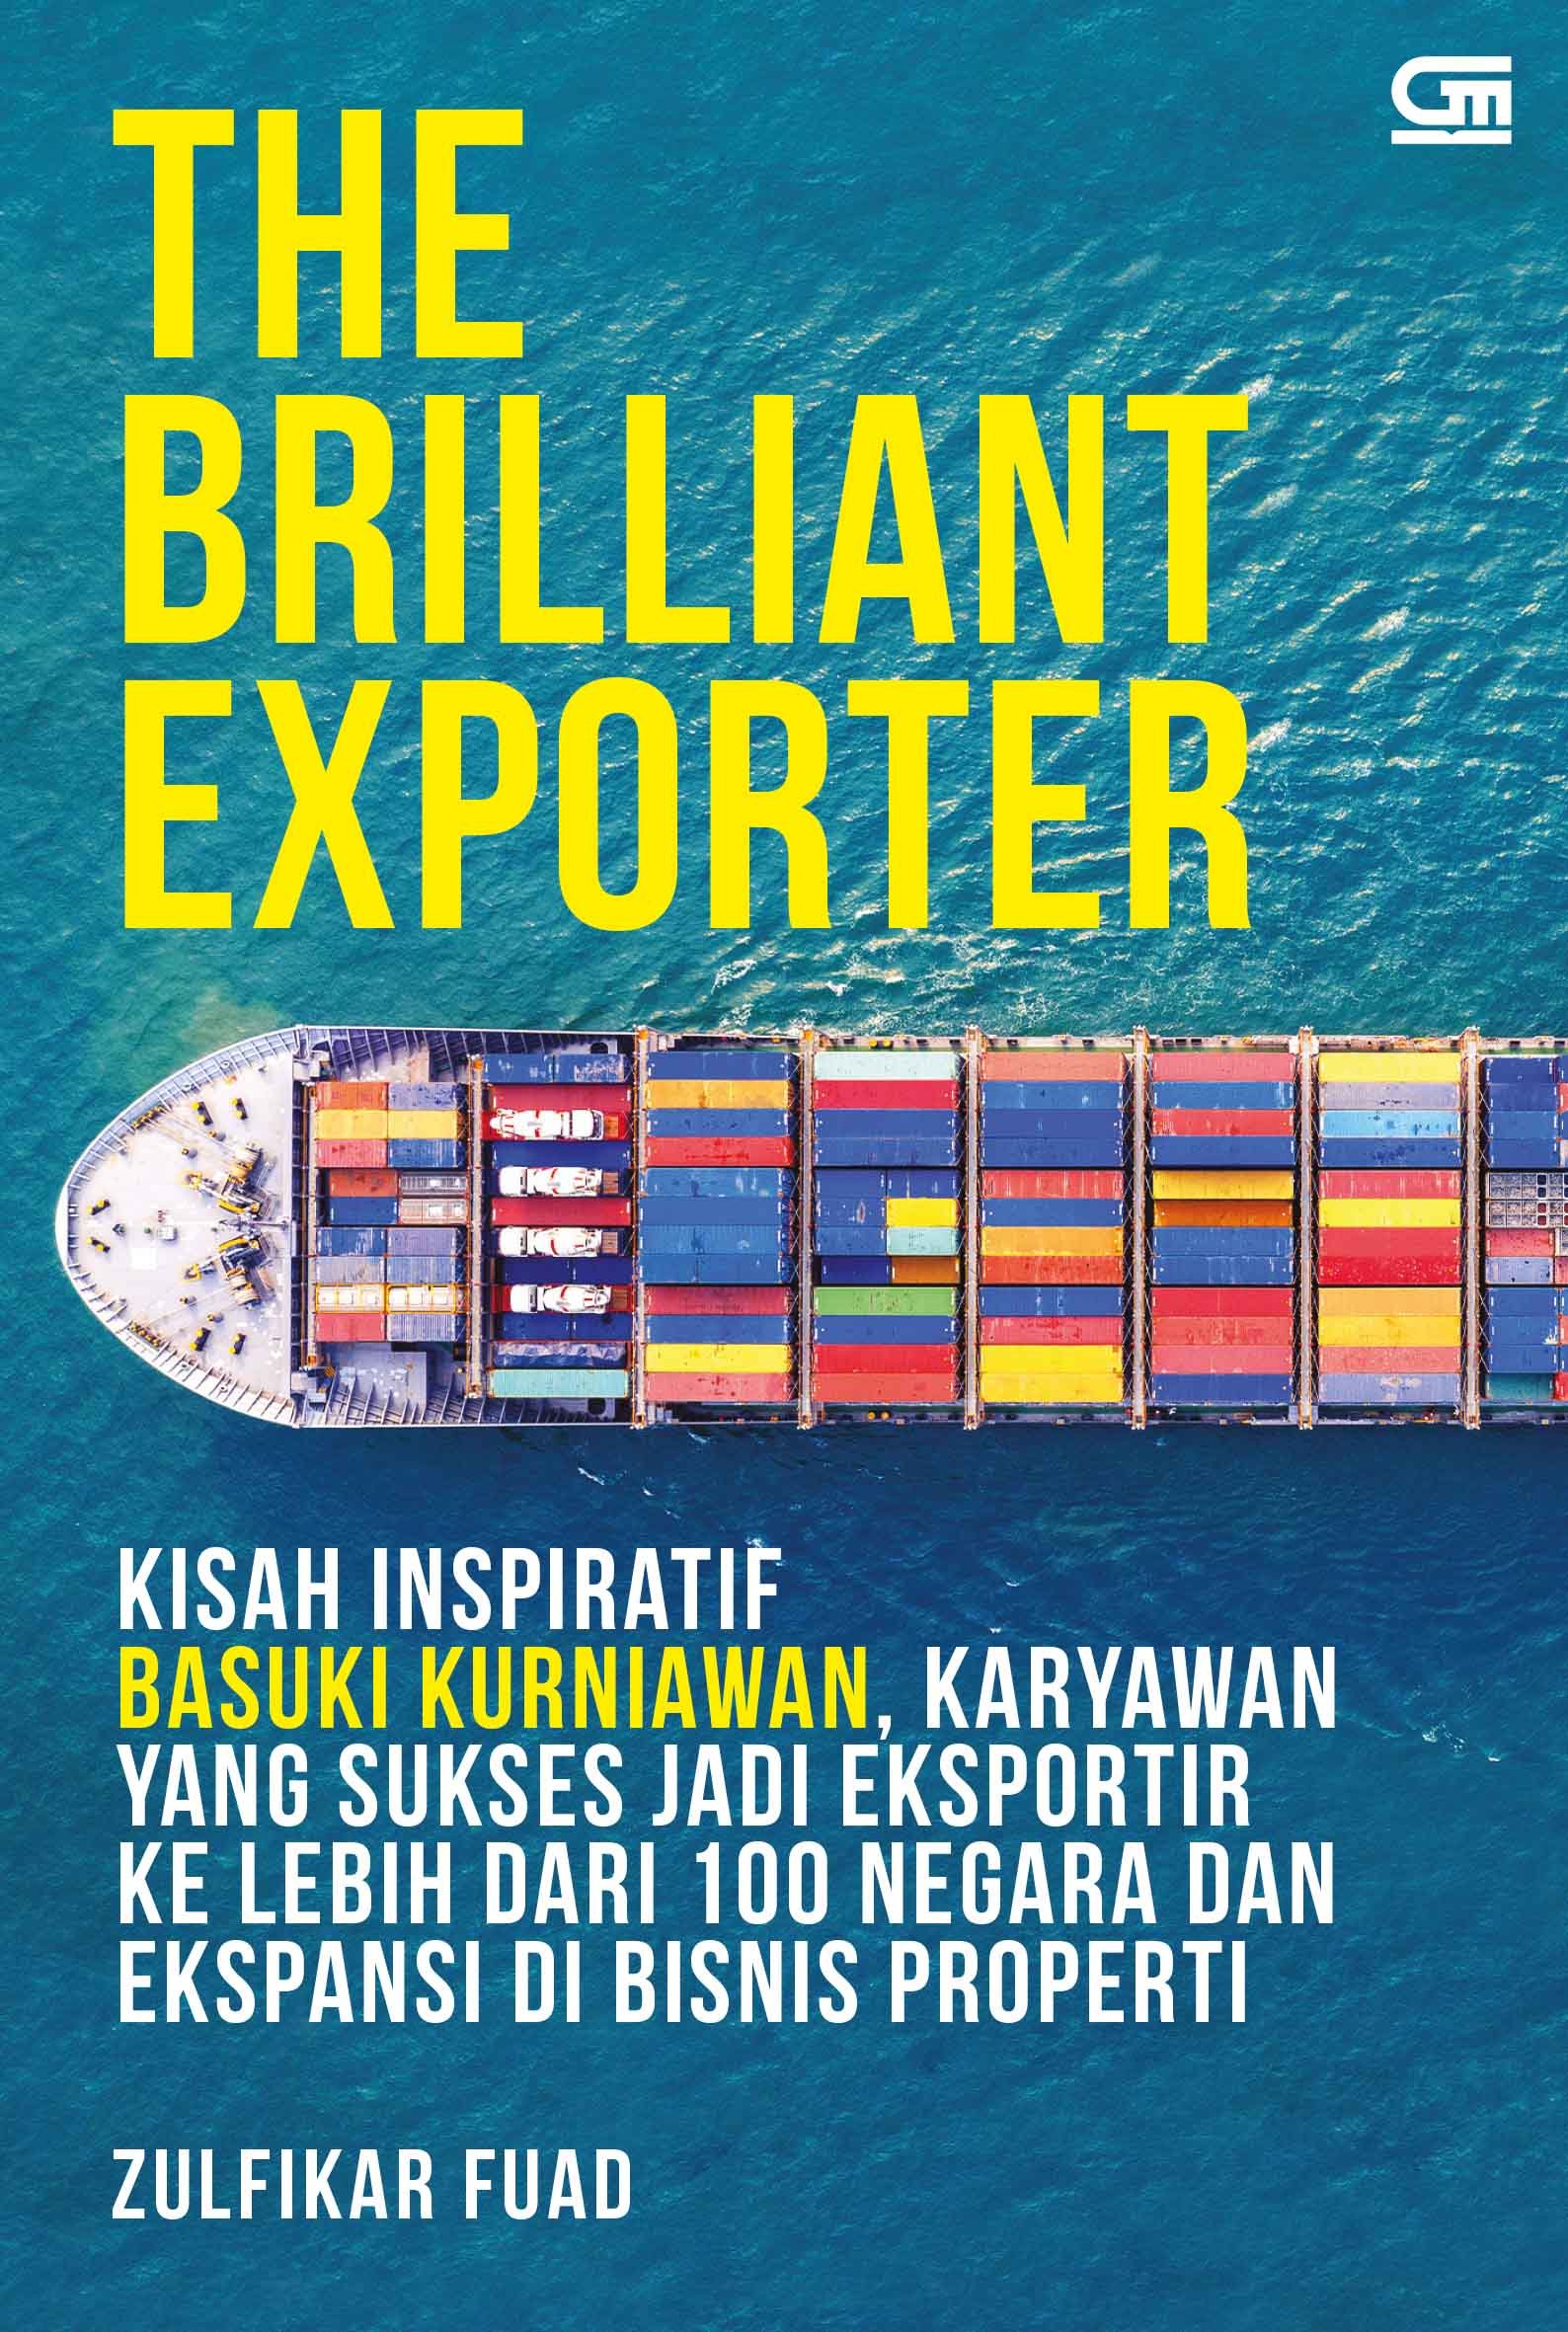 The Brilliant Exporter: Kisah Inspiratif Basuki Kurniawan